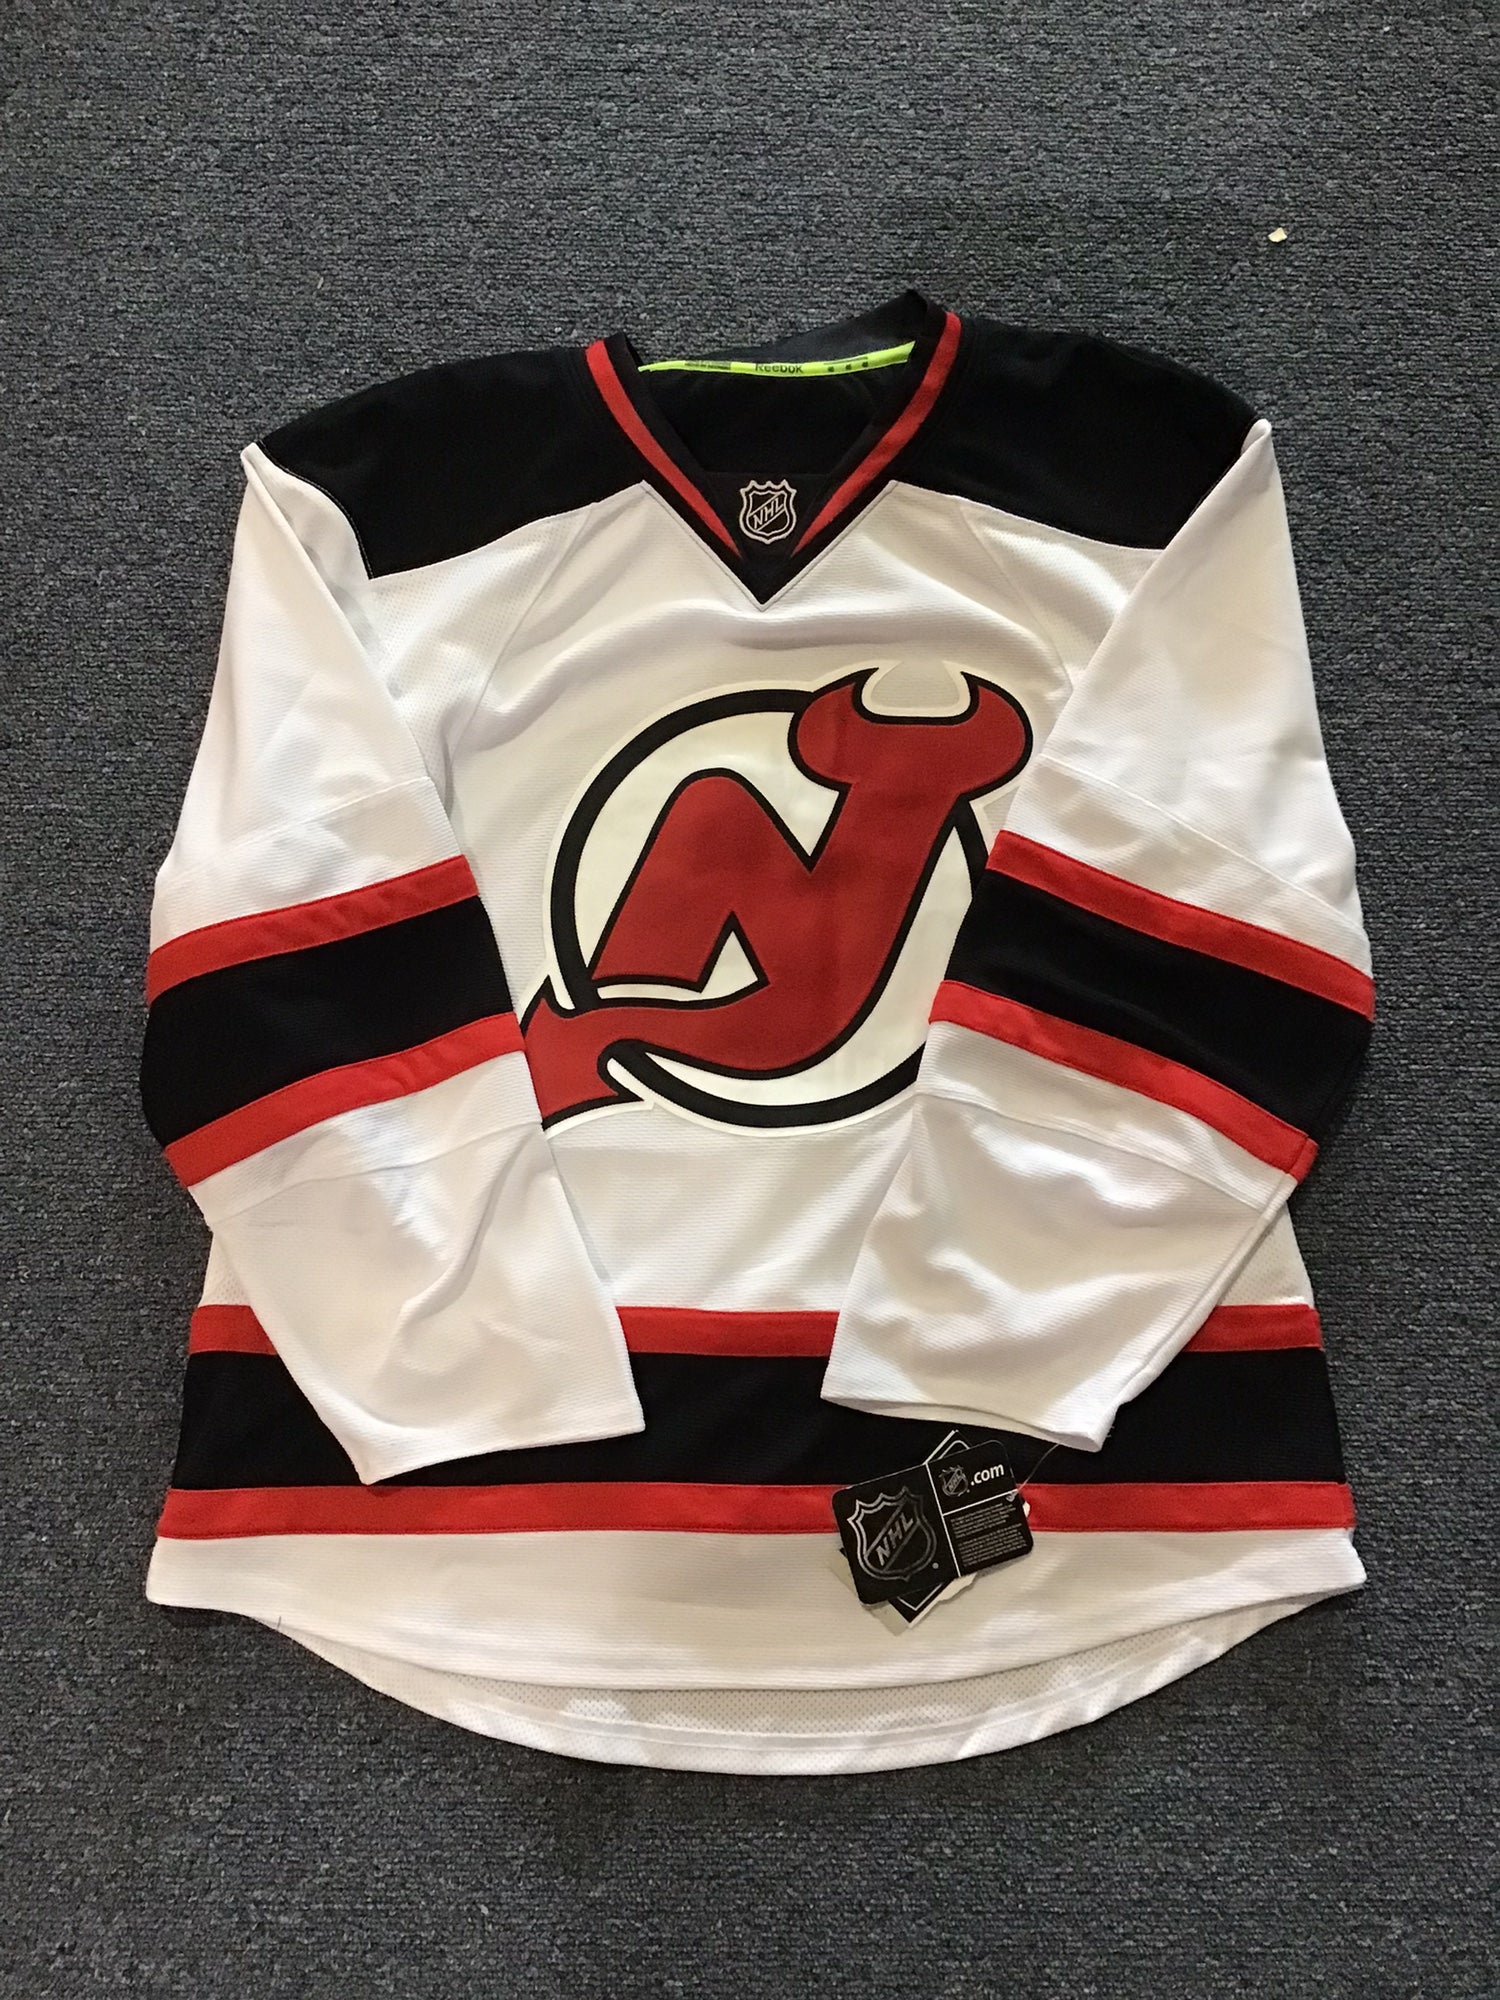 New Jersey Devils Gear